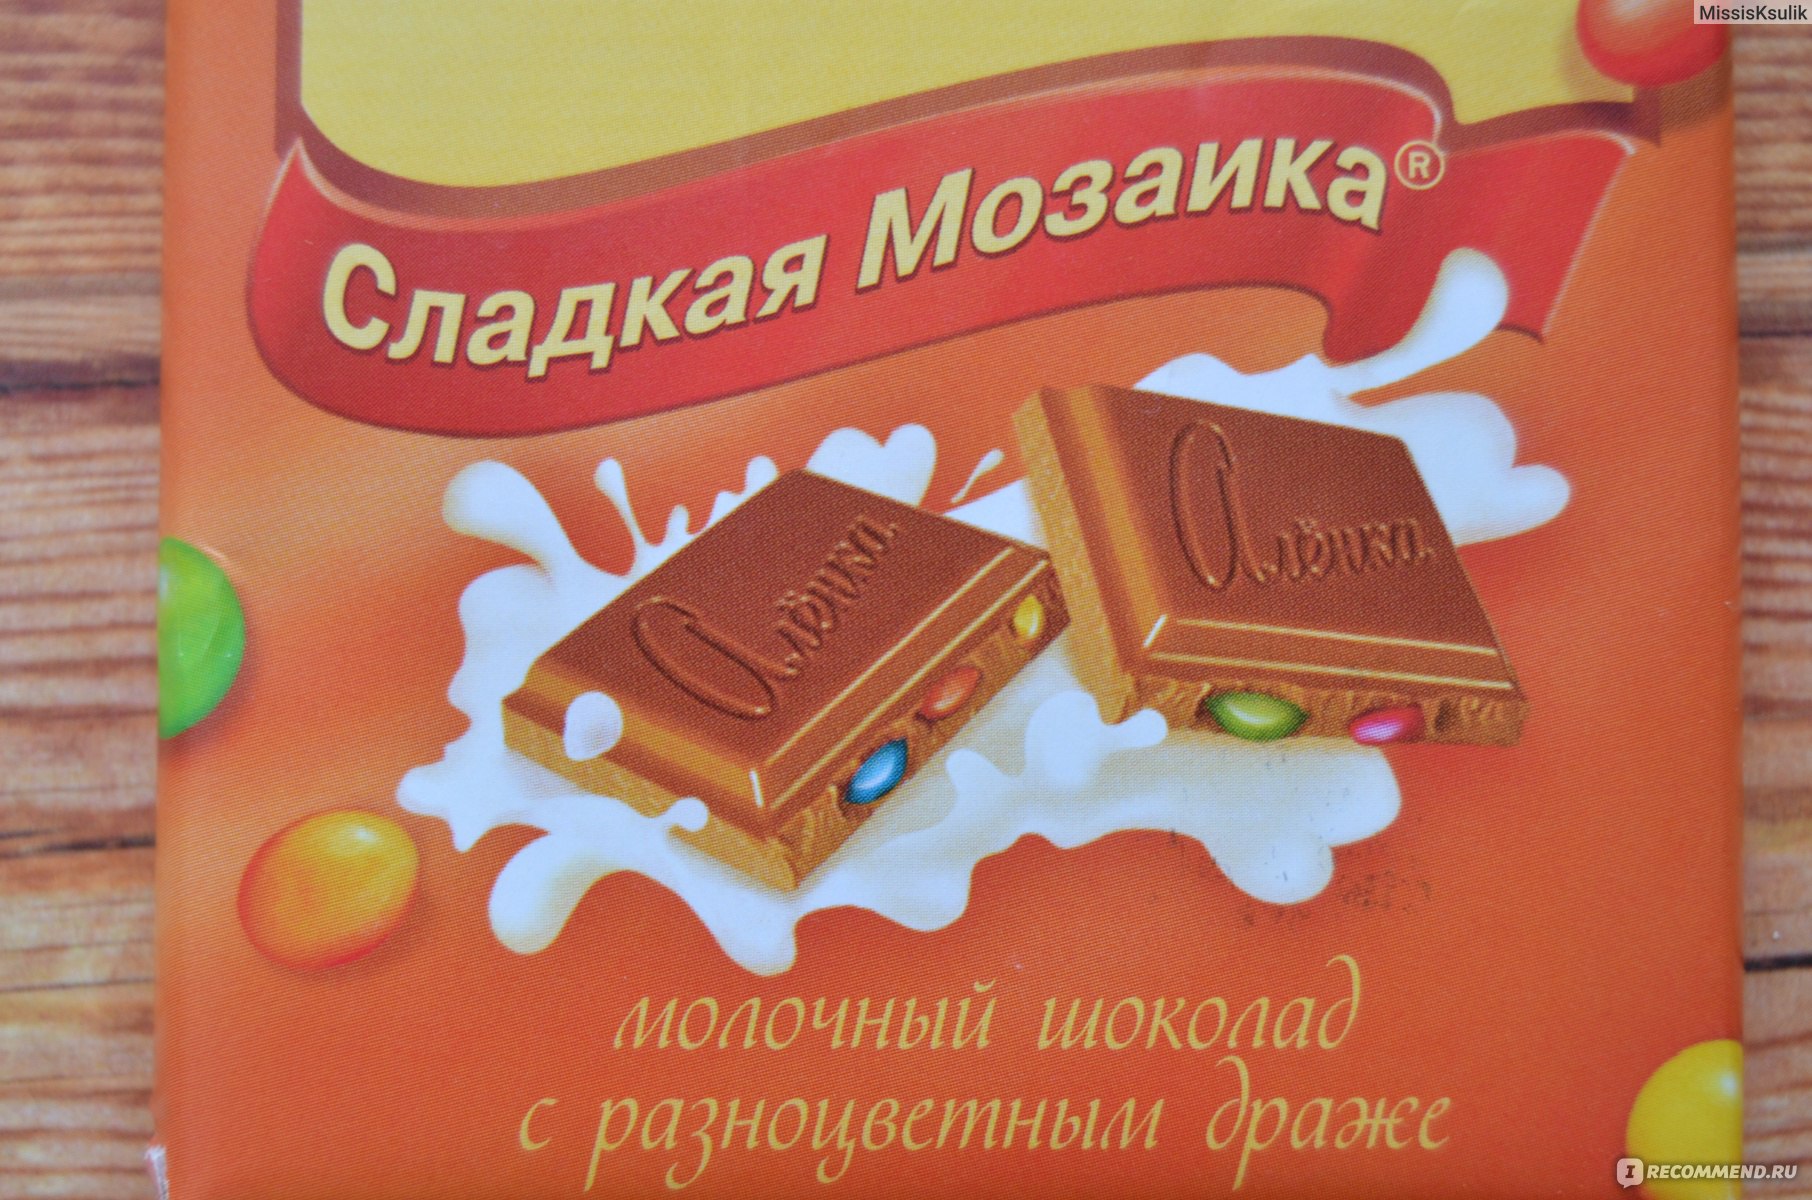 Шоколад советских времен. Советские шоколадные плитки. Шоколадная плитка привет. Легендарная шоколадка молочный шоколад.